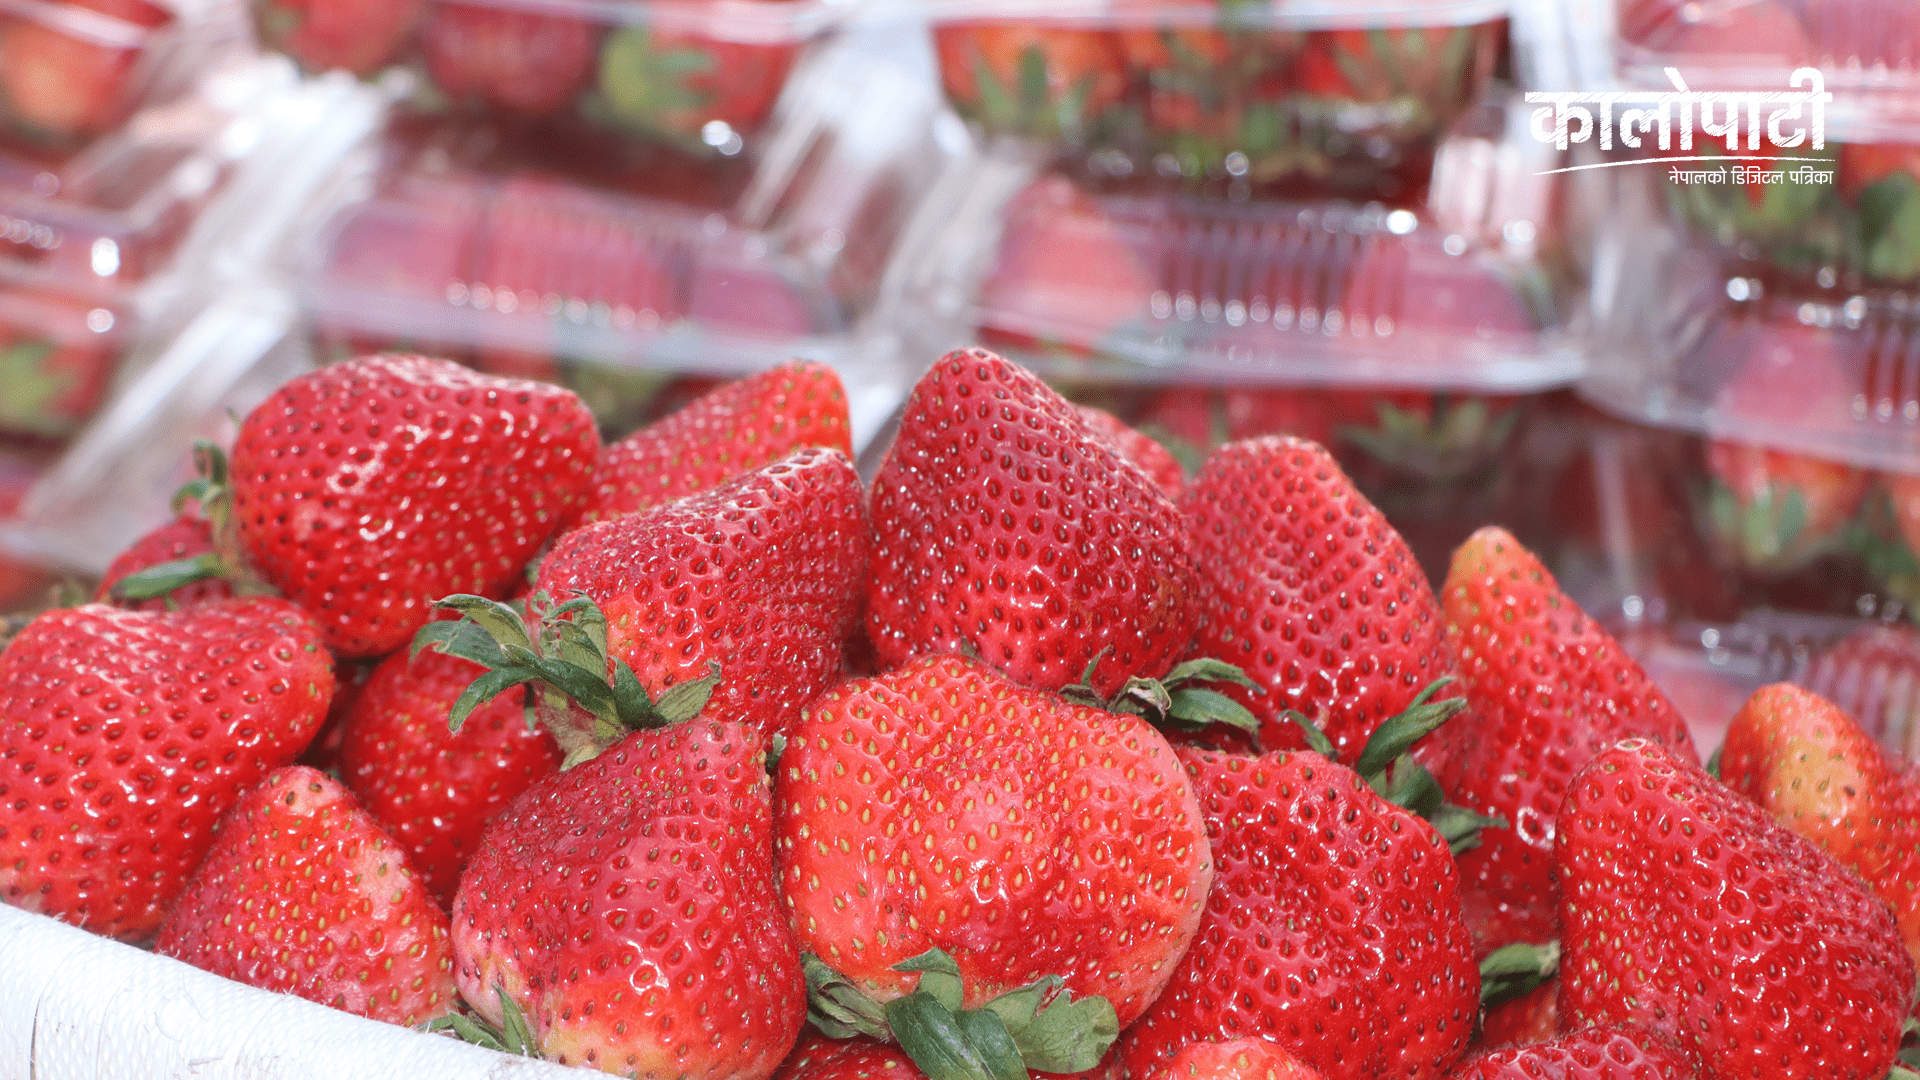 शुक्रबार स्ट्रबेरीको मूल्य बढ्यो, अन्य तरकारी तथा फलफूलको न्यूनतम मूल्यमा सामान्य घटबढ